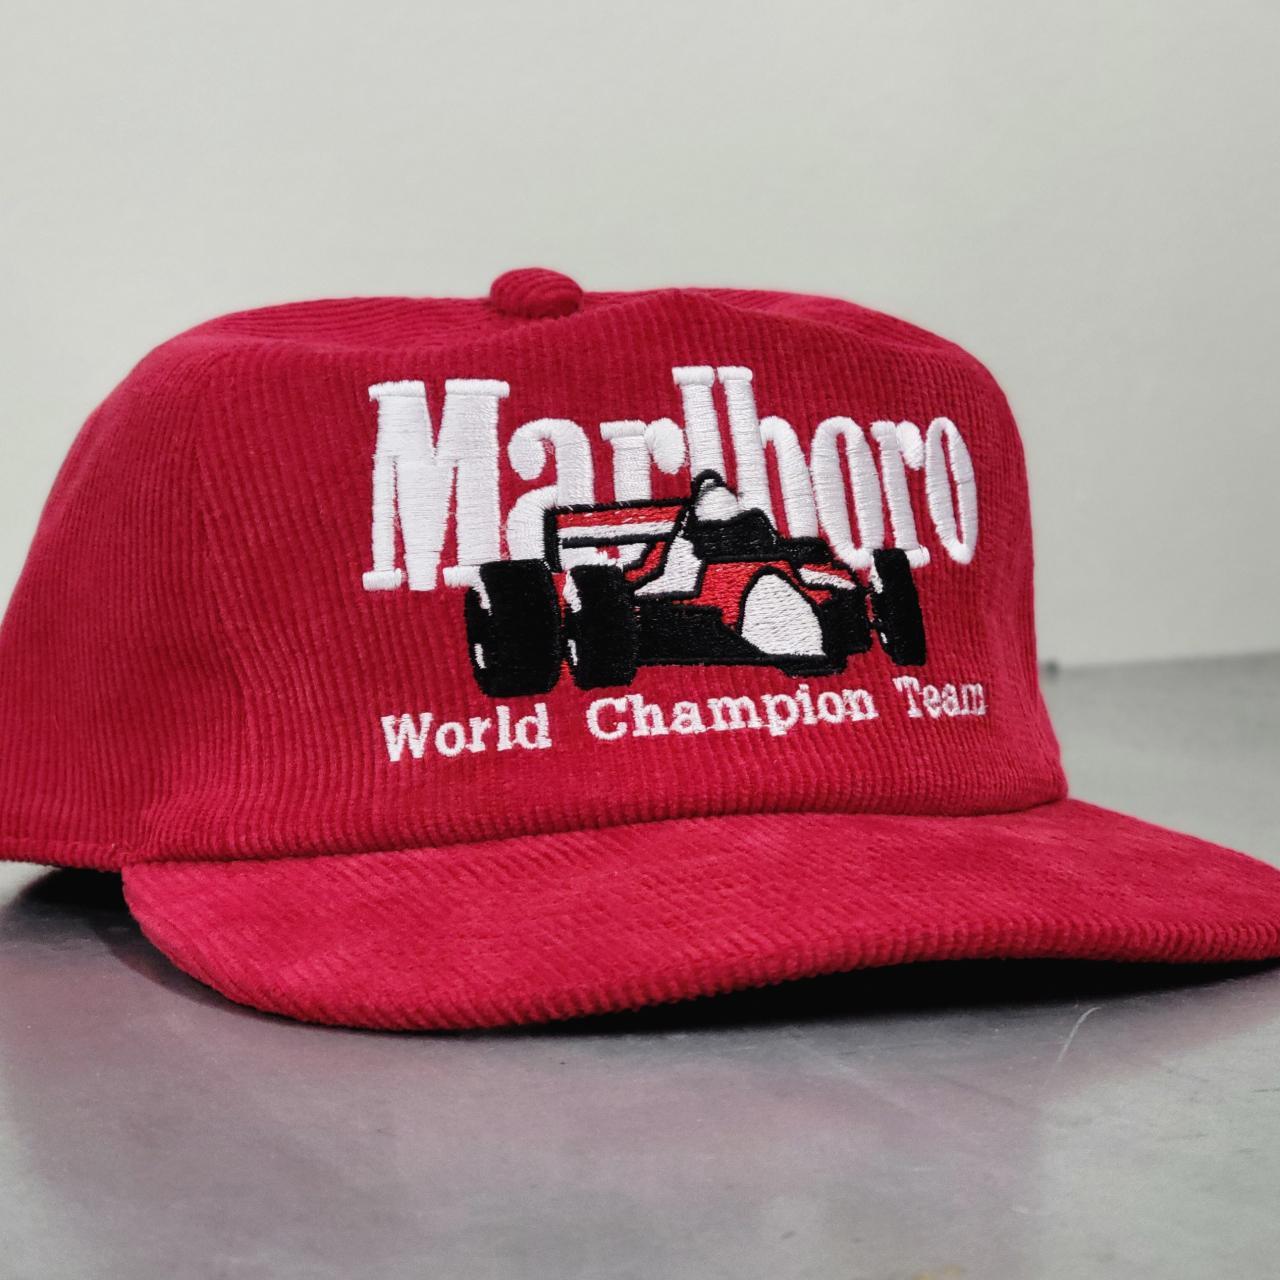 Vintage Marlboro Racing Team Corduroy Cap - Red ... - Depop